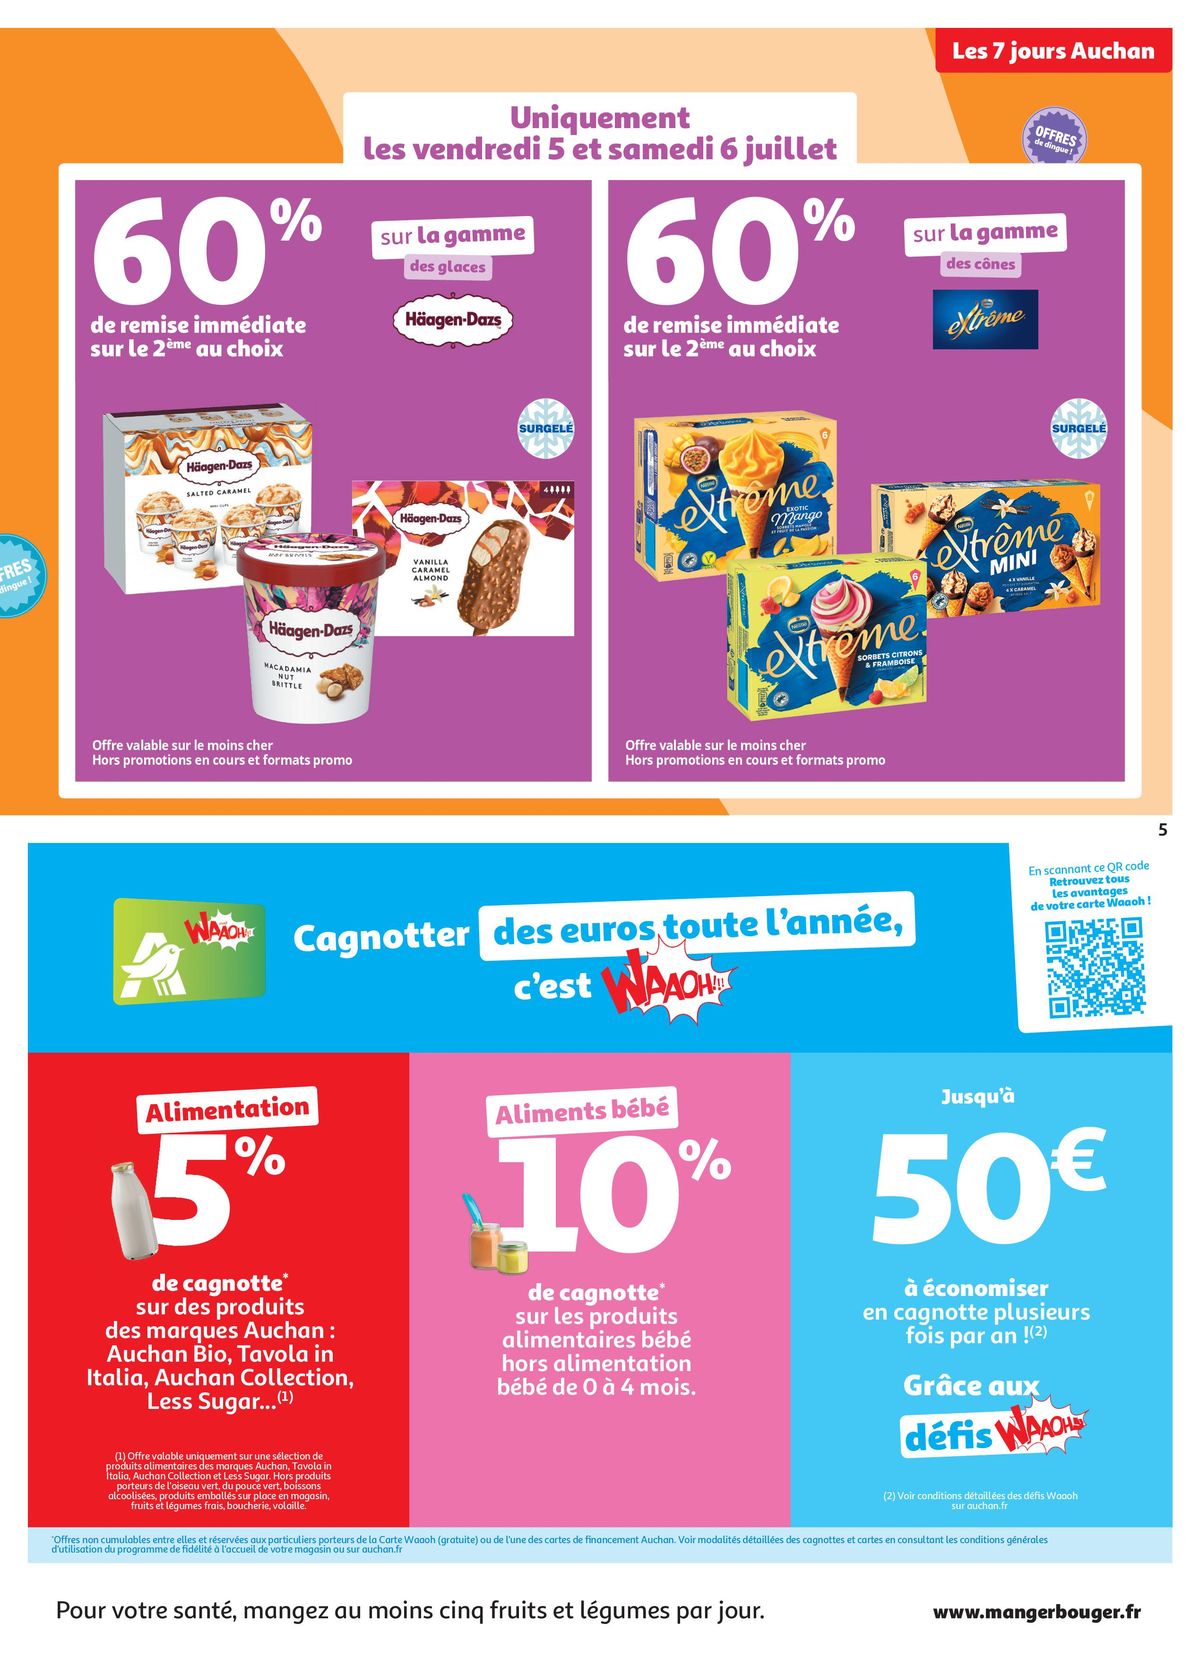 Catalogue C'est les 7 jours Auchan dans votre super !, page 00005